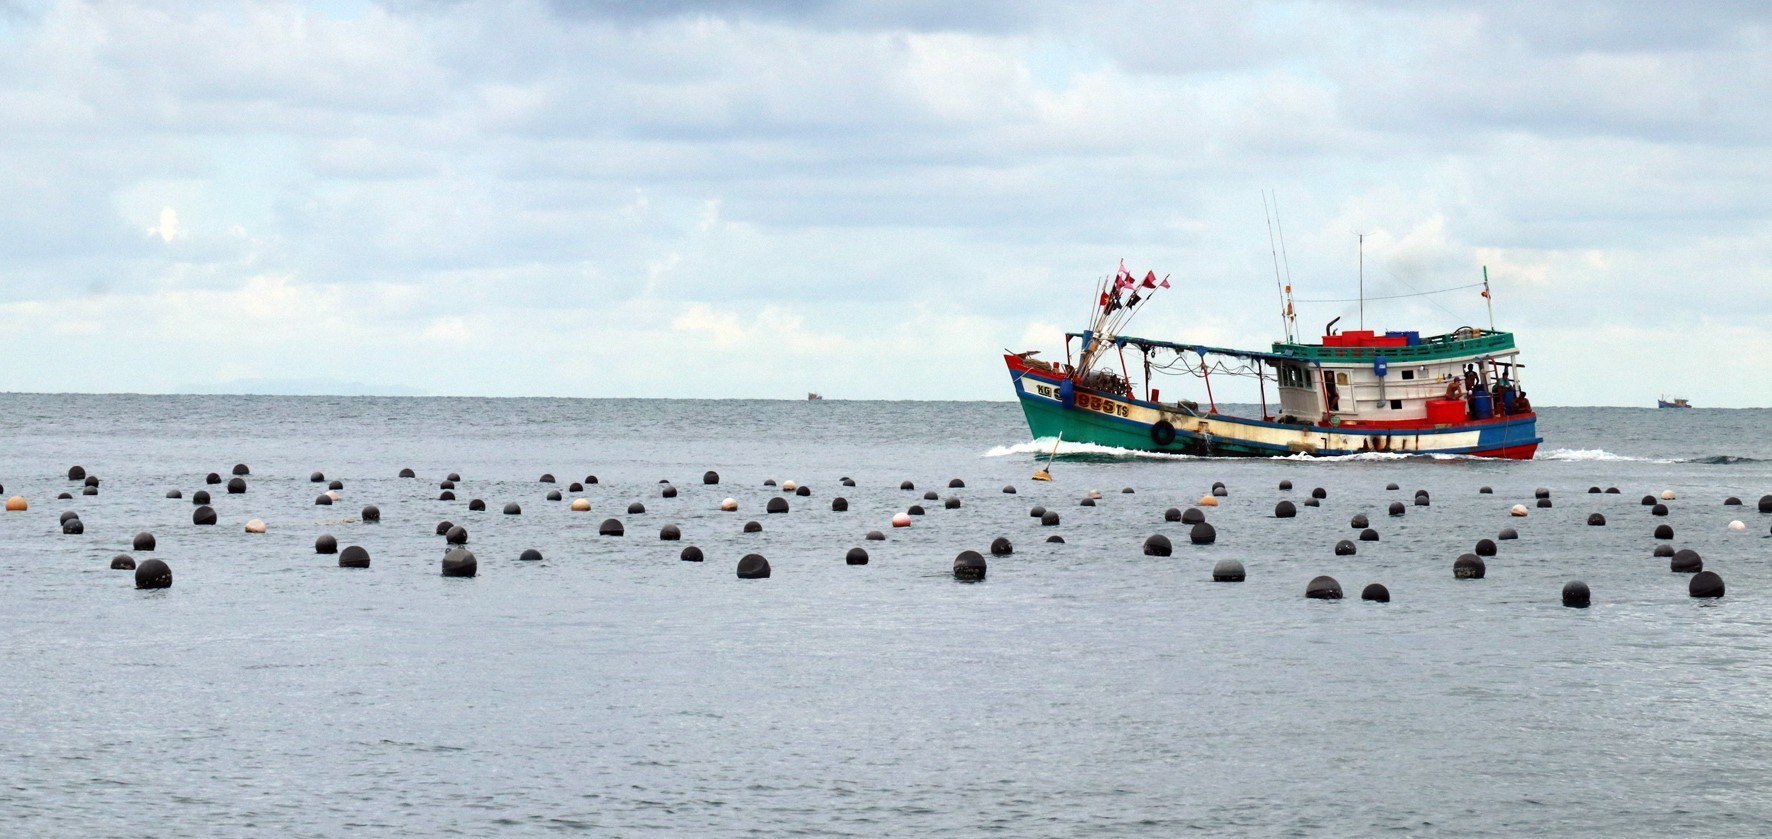 Khu vực nuôi ngọc trai lấy ngọc trên biển ở huyện đảo Phú Quốc. (Ảnh: Lê Huy Hải/TTXVN)